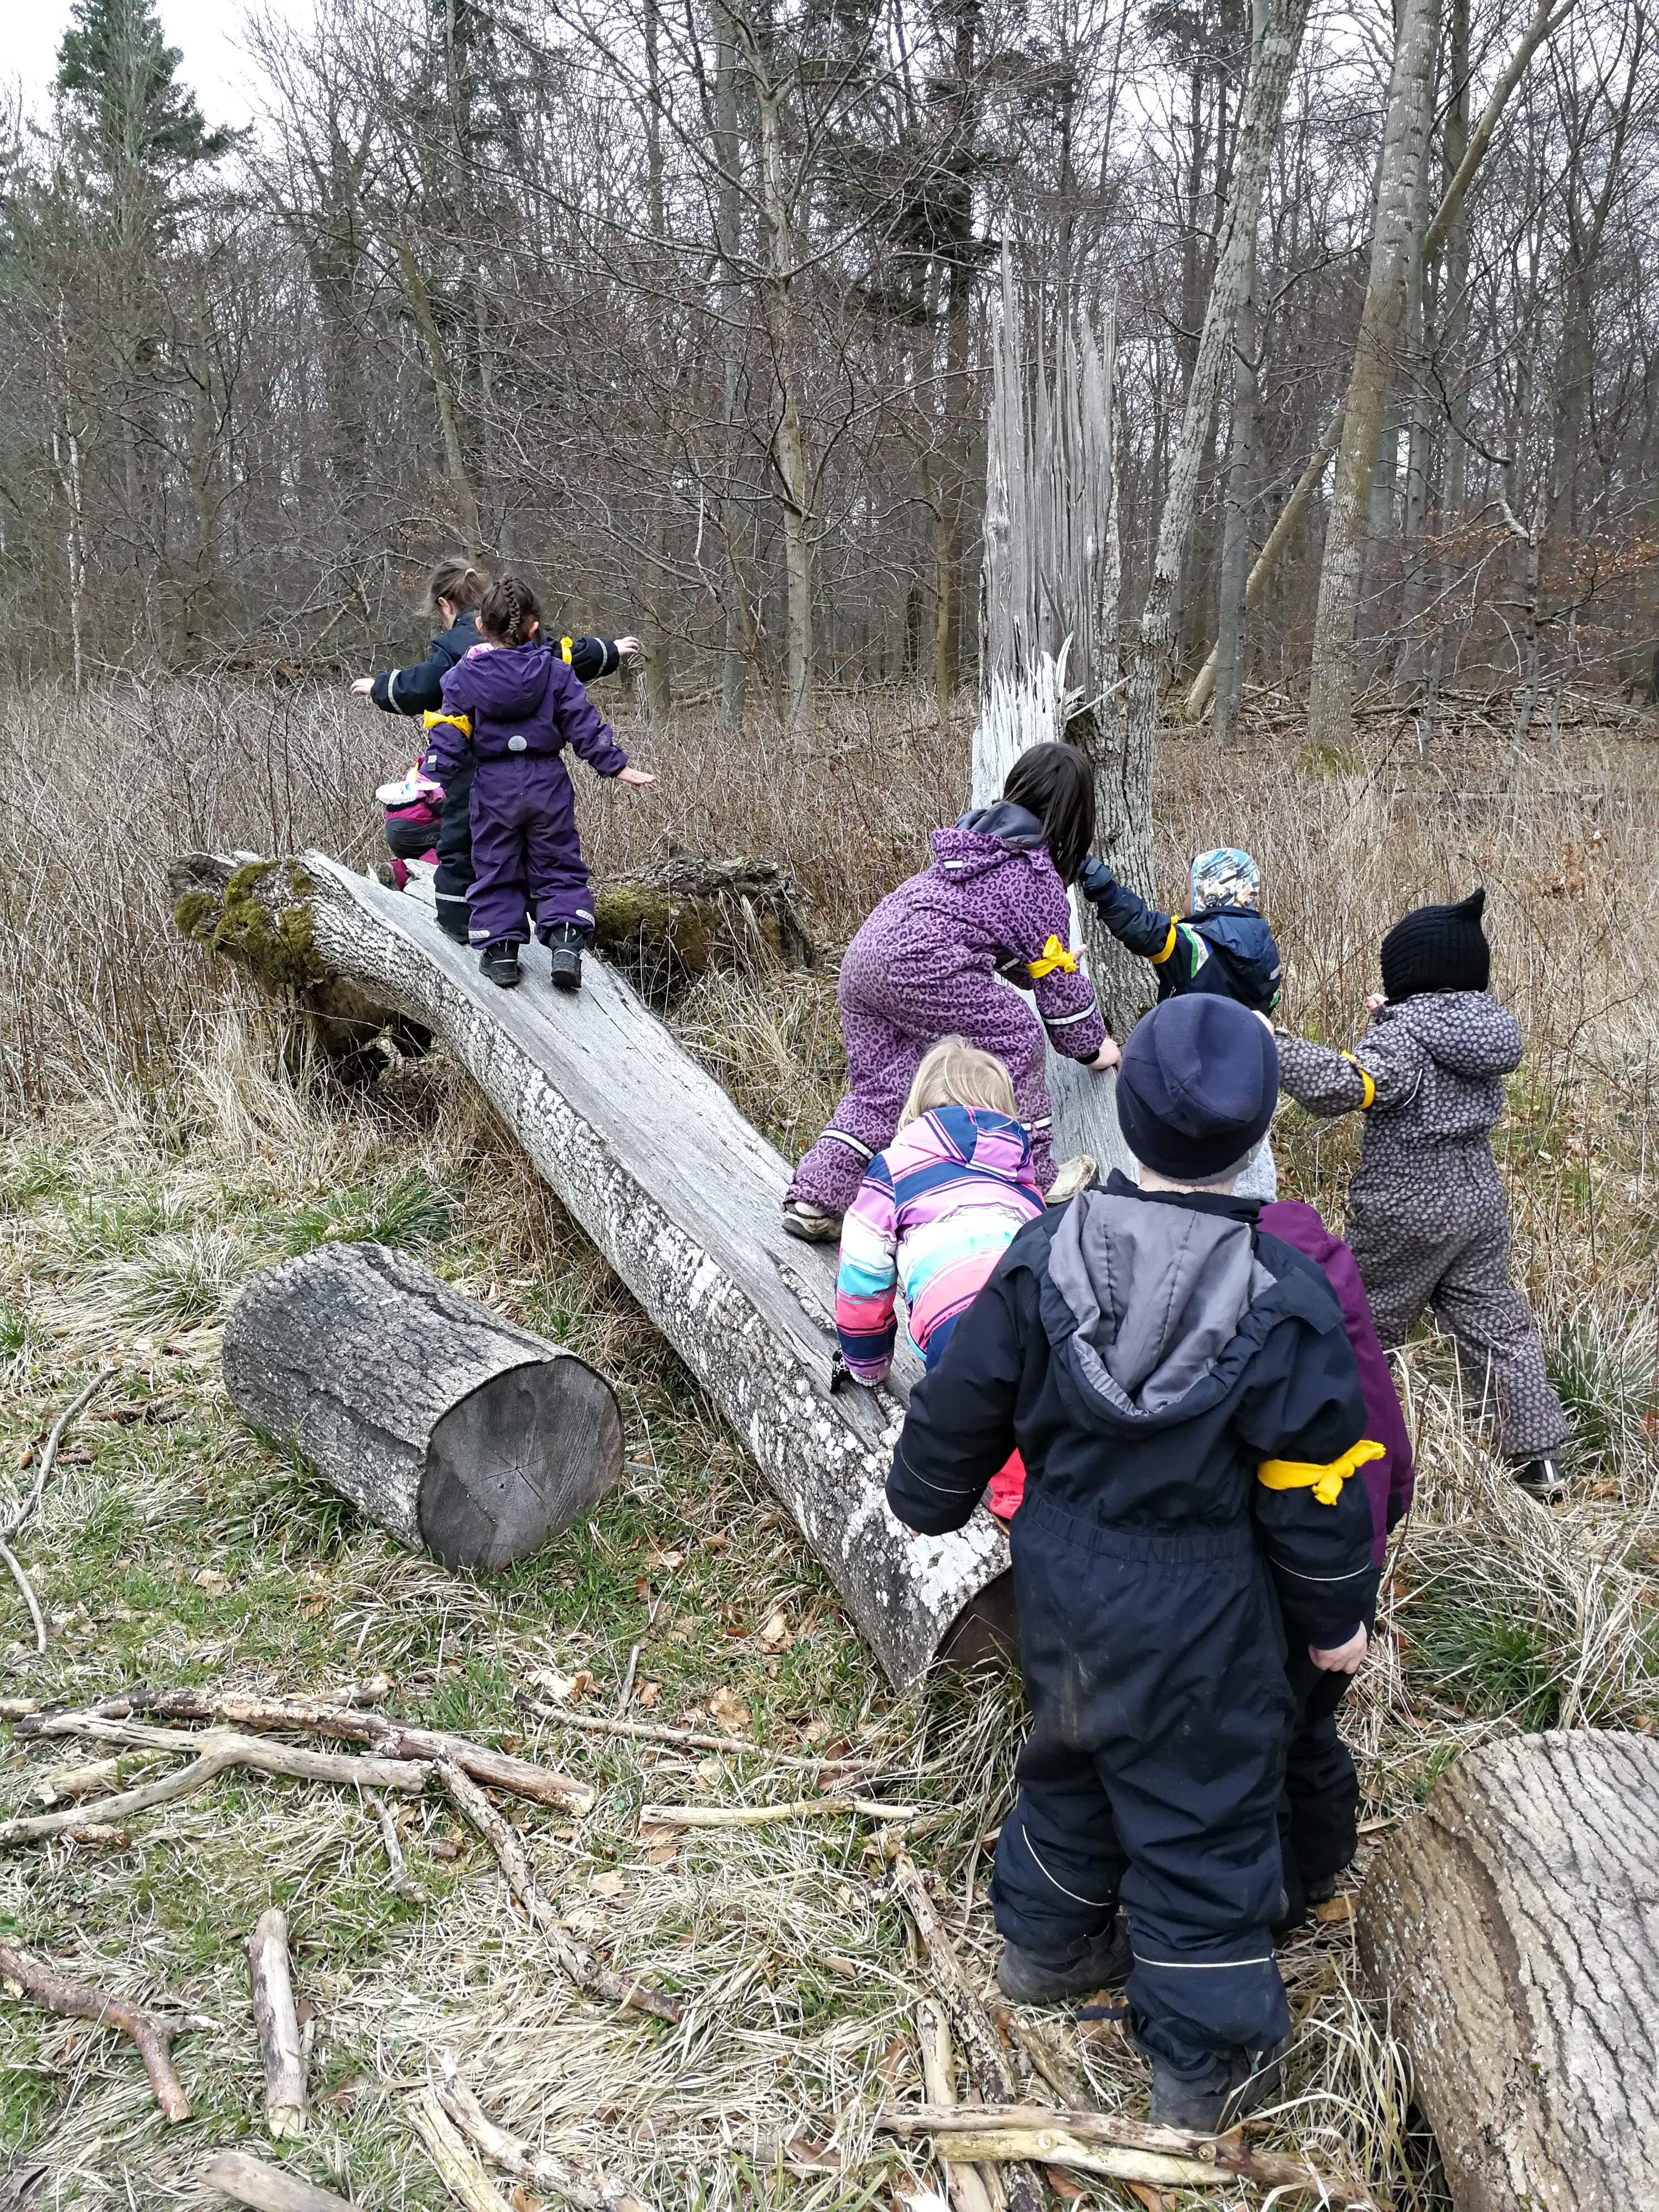 Børn, der kravler på træstamme